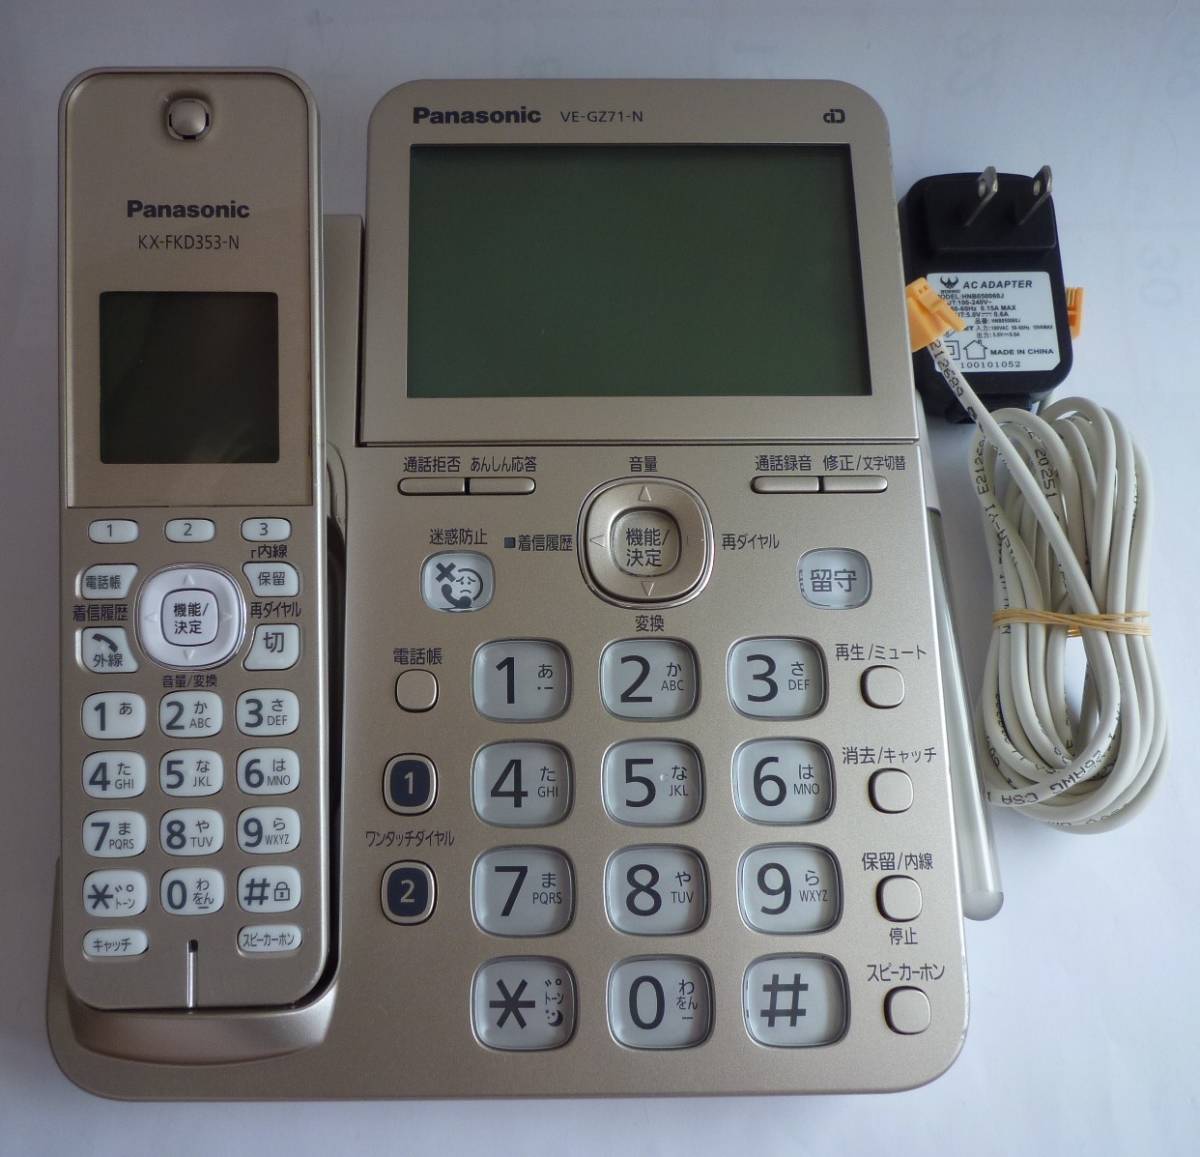 定番の中古商品 Panasonic パナソニック VE-GZ71DL コードレス電話機 